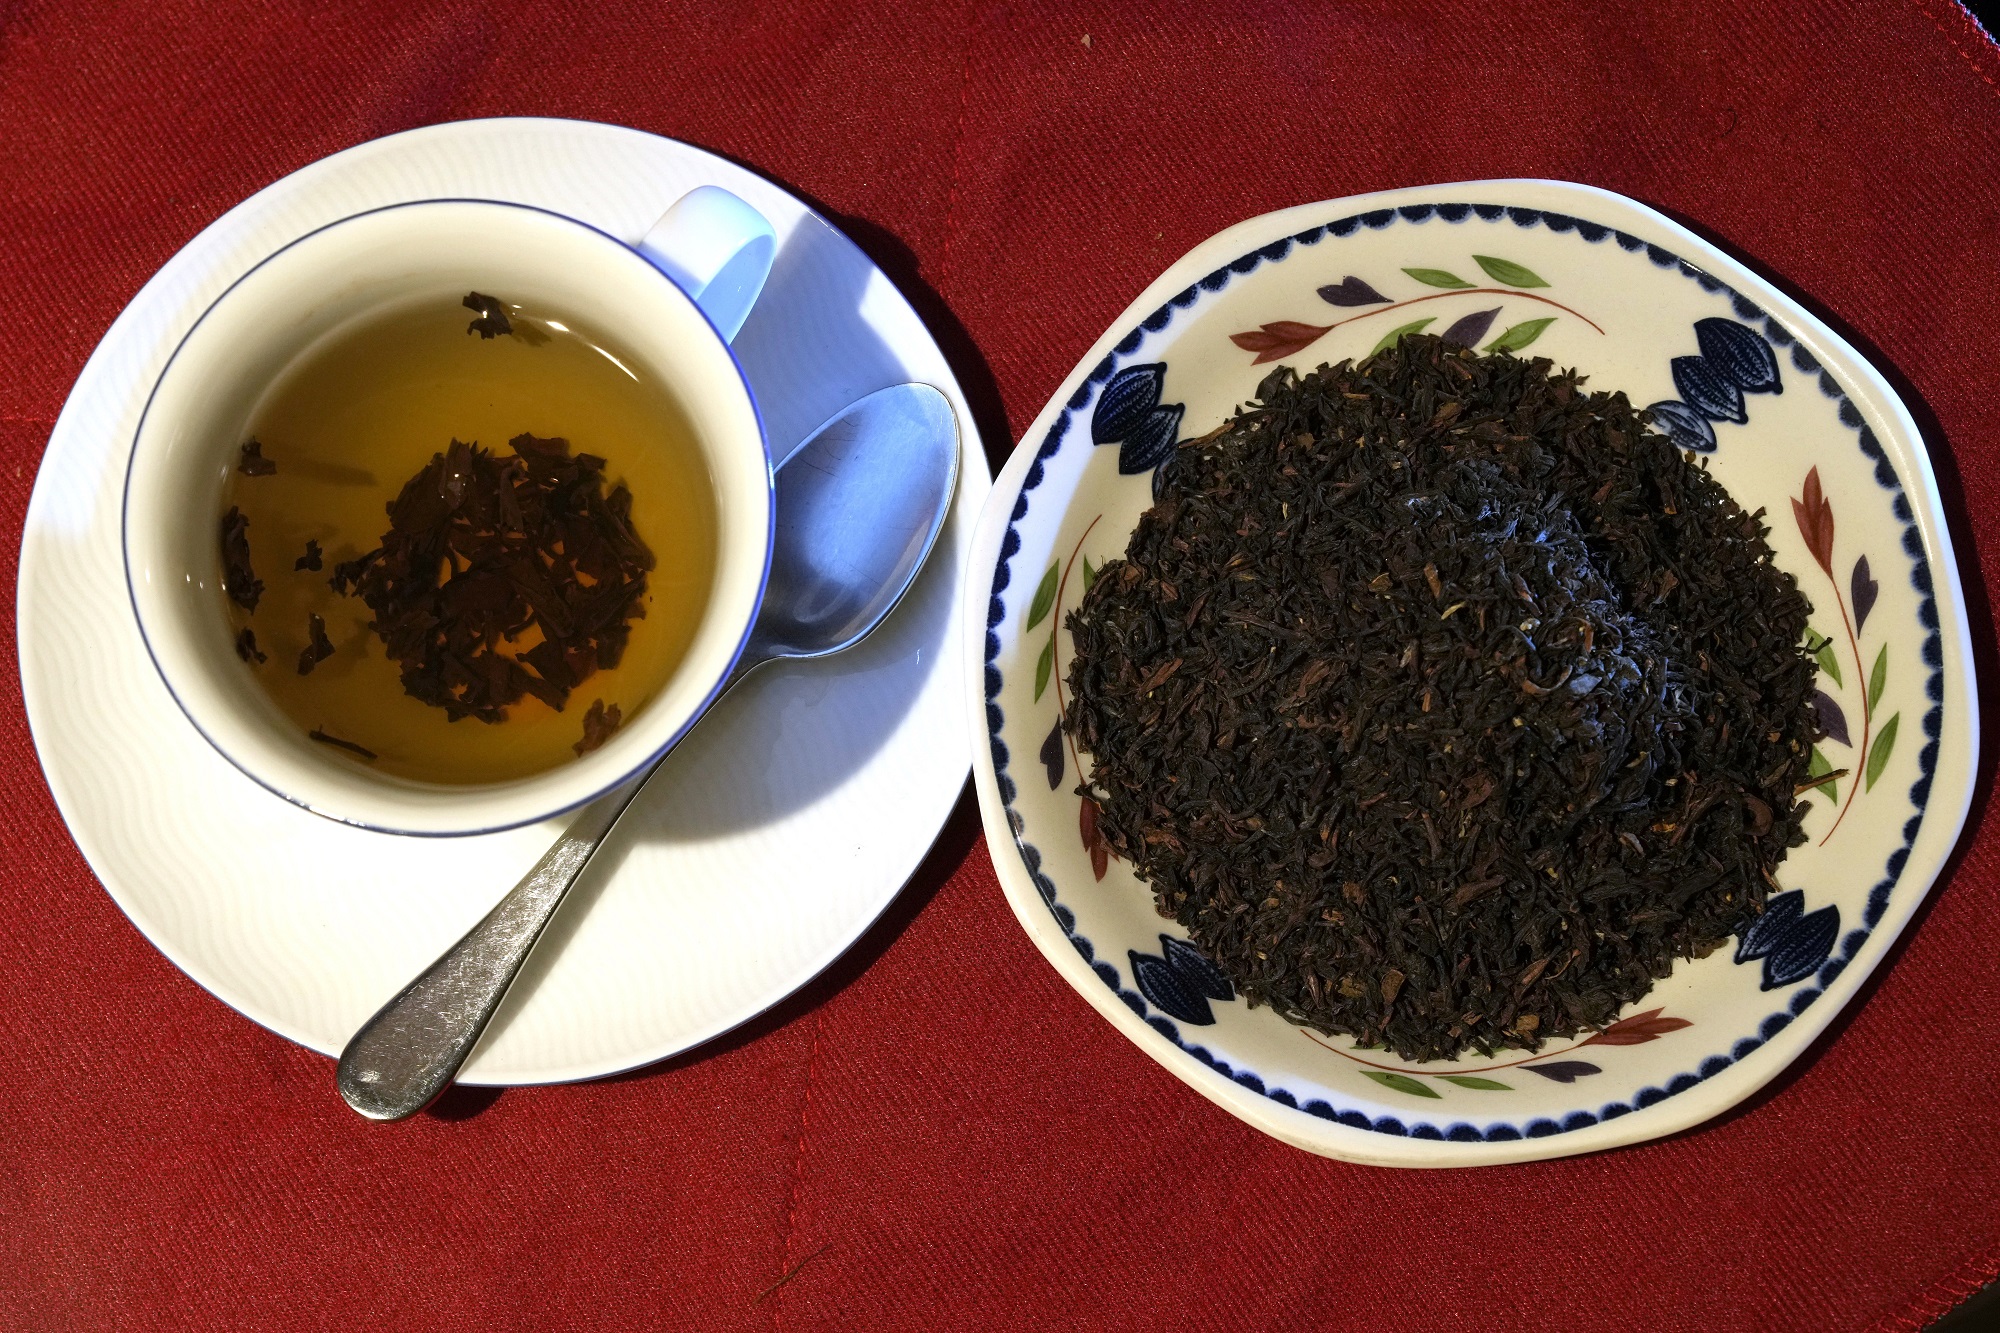 Μικρότερος ο κίνδυνος θανάτου για όσους πίνουν πολύ μαύρο τσάι